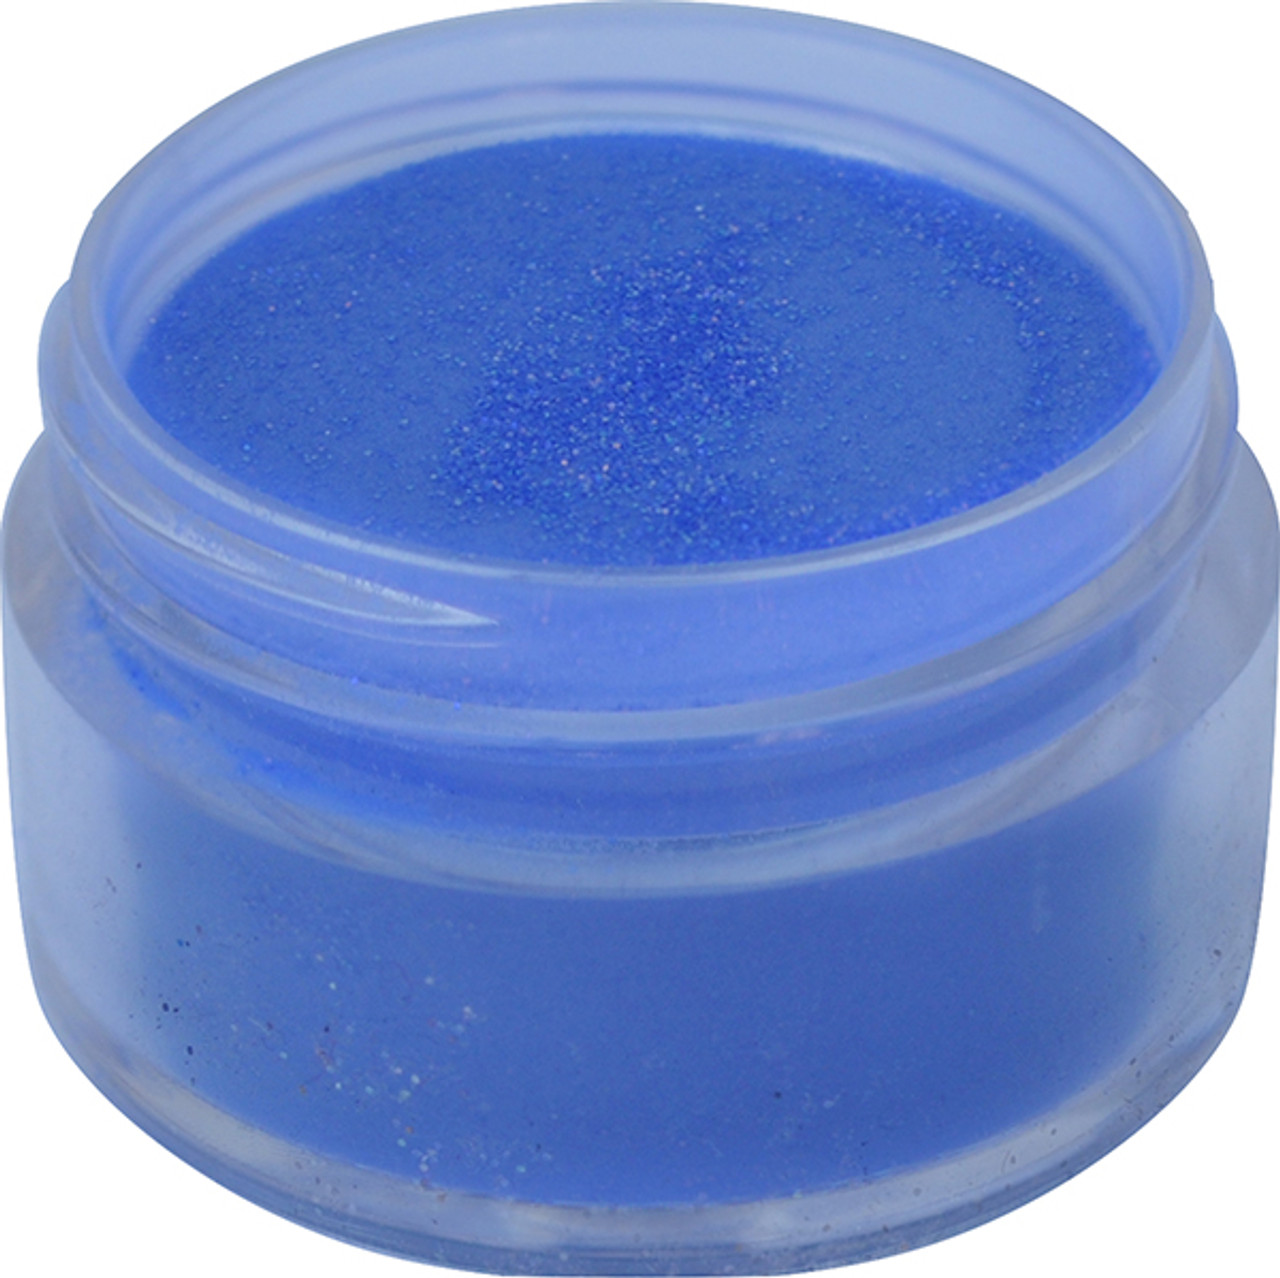 U2 GLITTER Color Powders - Seafoam -  4 oz